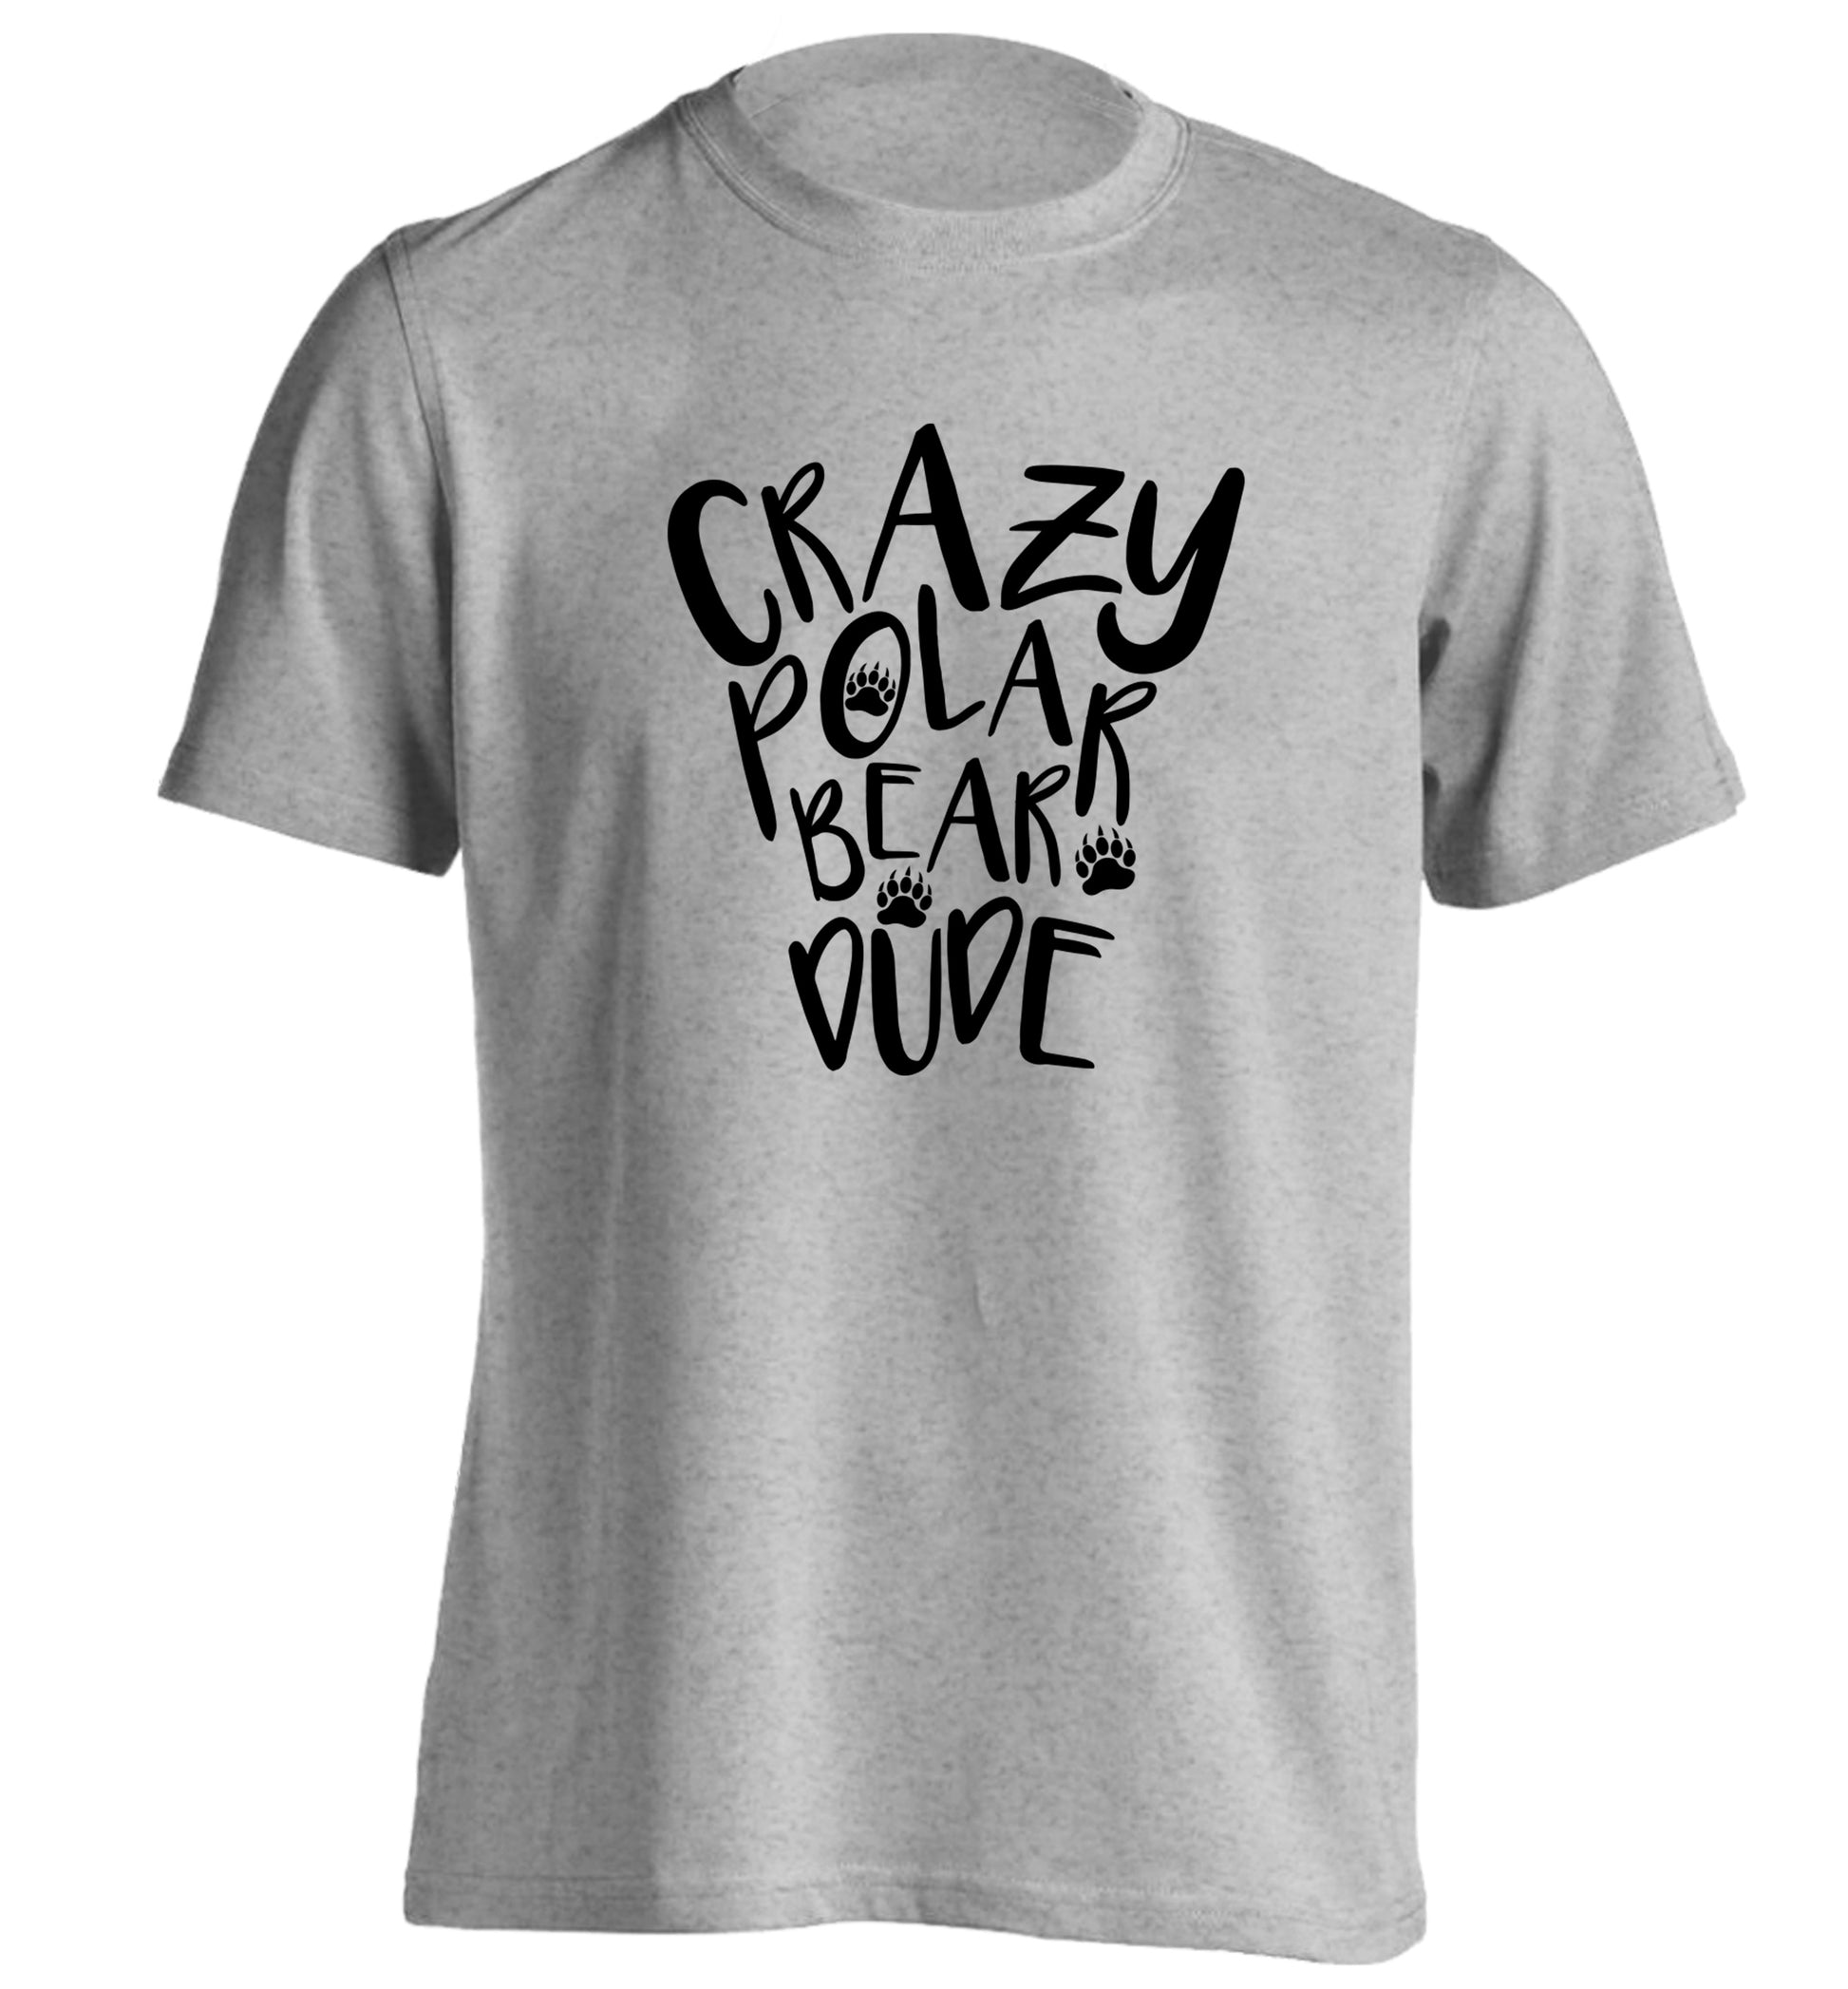 Crazy polar bear dude adults unisex grey Tshirt 2XL